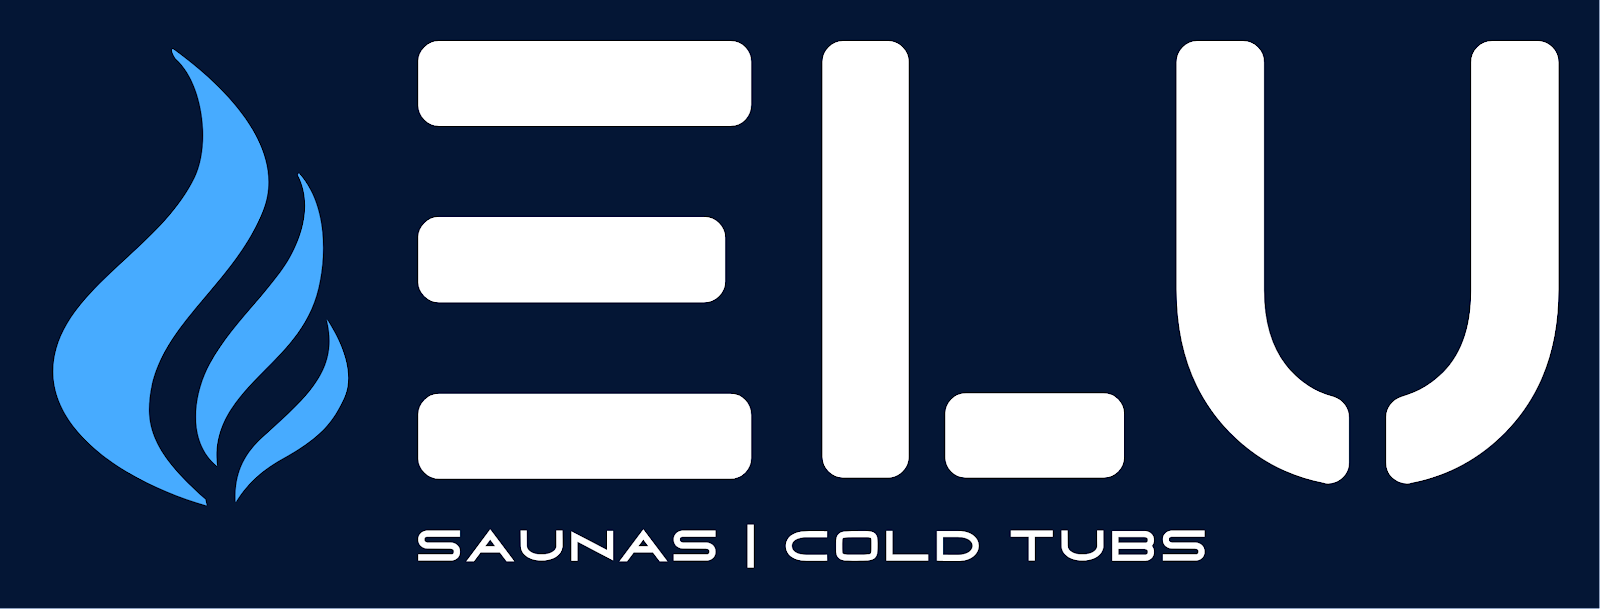 ELU - Saunas | Cold Tubs